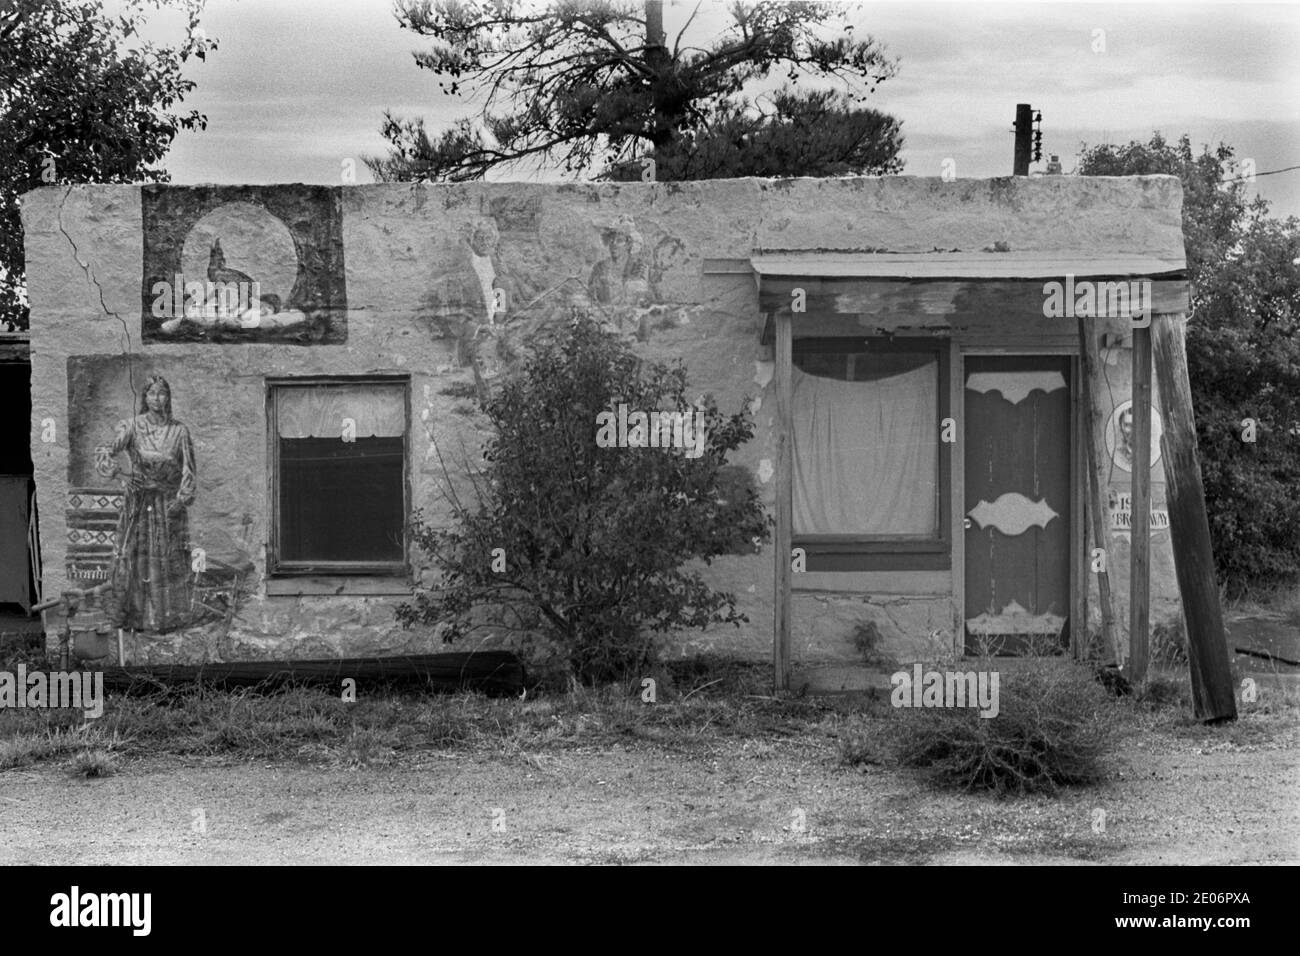 Stilles altes adobe-Gebäude, ein Handelsposten mit indianischer Ureinwohner-Malerei an den Außenwänden. Sweetwater, Texas USA 1999 und altes stilles Gebäude. 1990ER USA HOMER SYKES Stockfoto